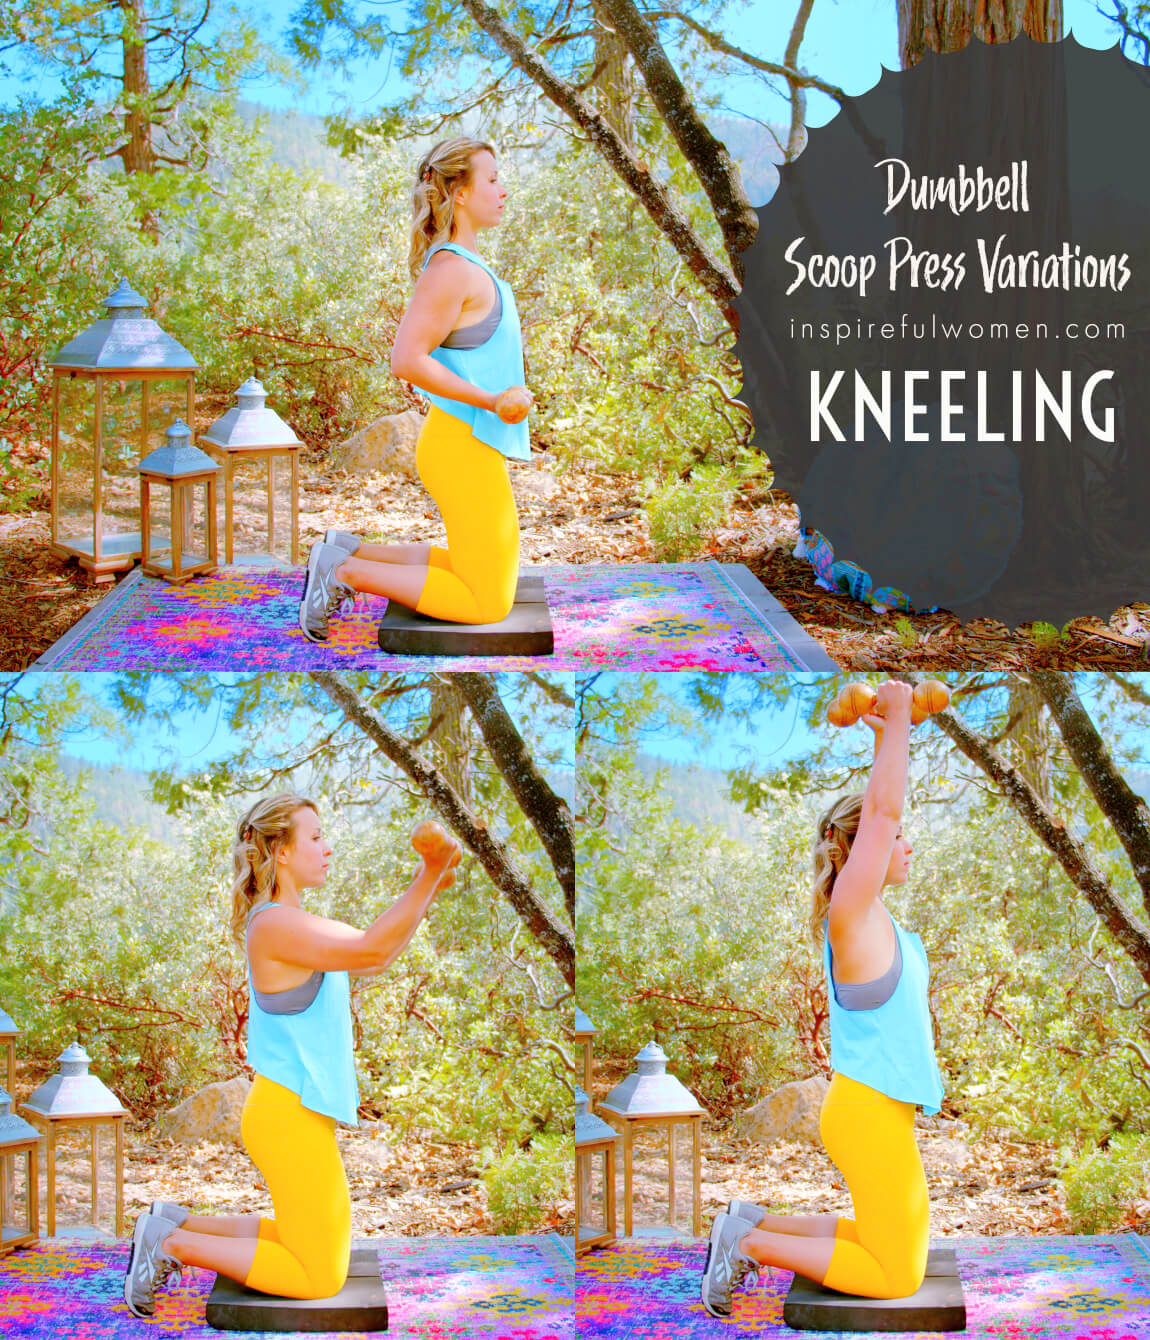 kneeling-scoop-press-shoulder-exercise-variation